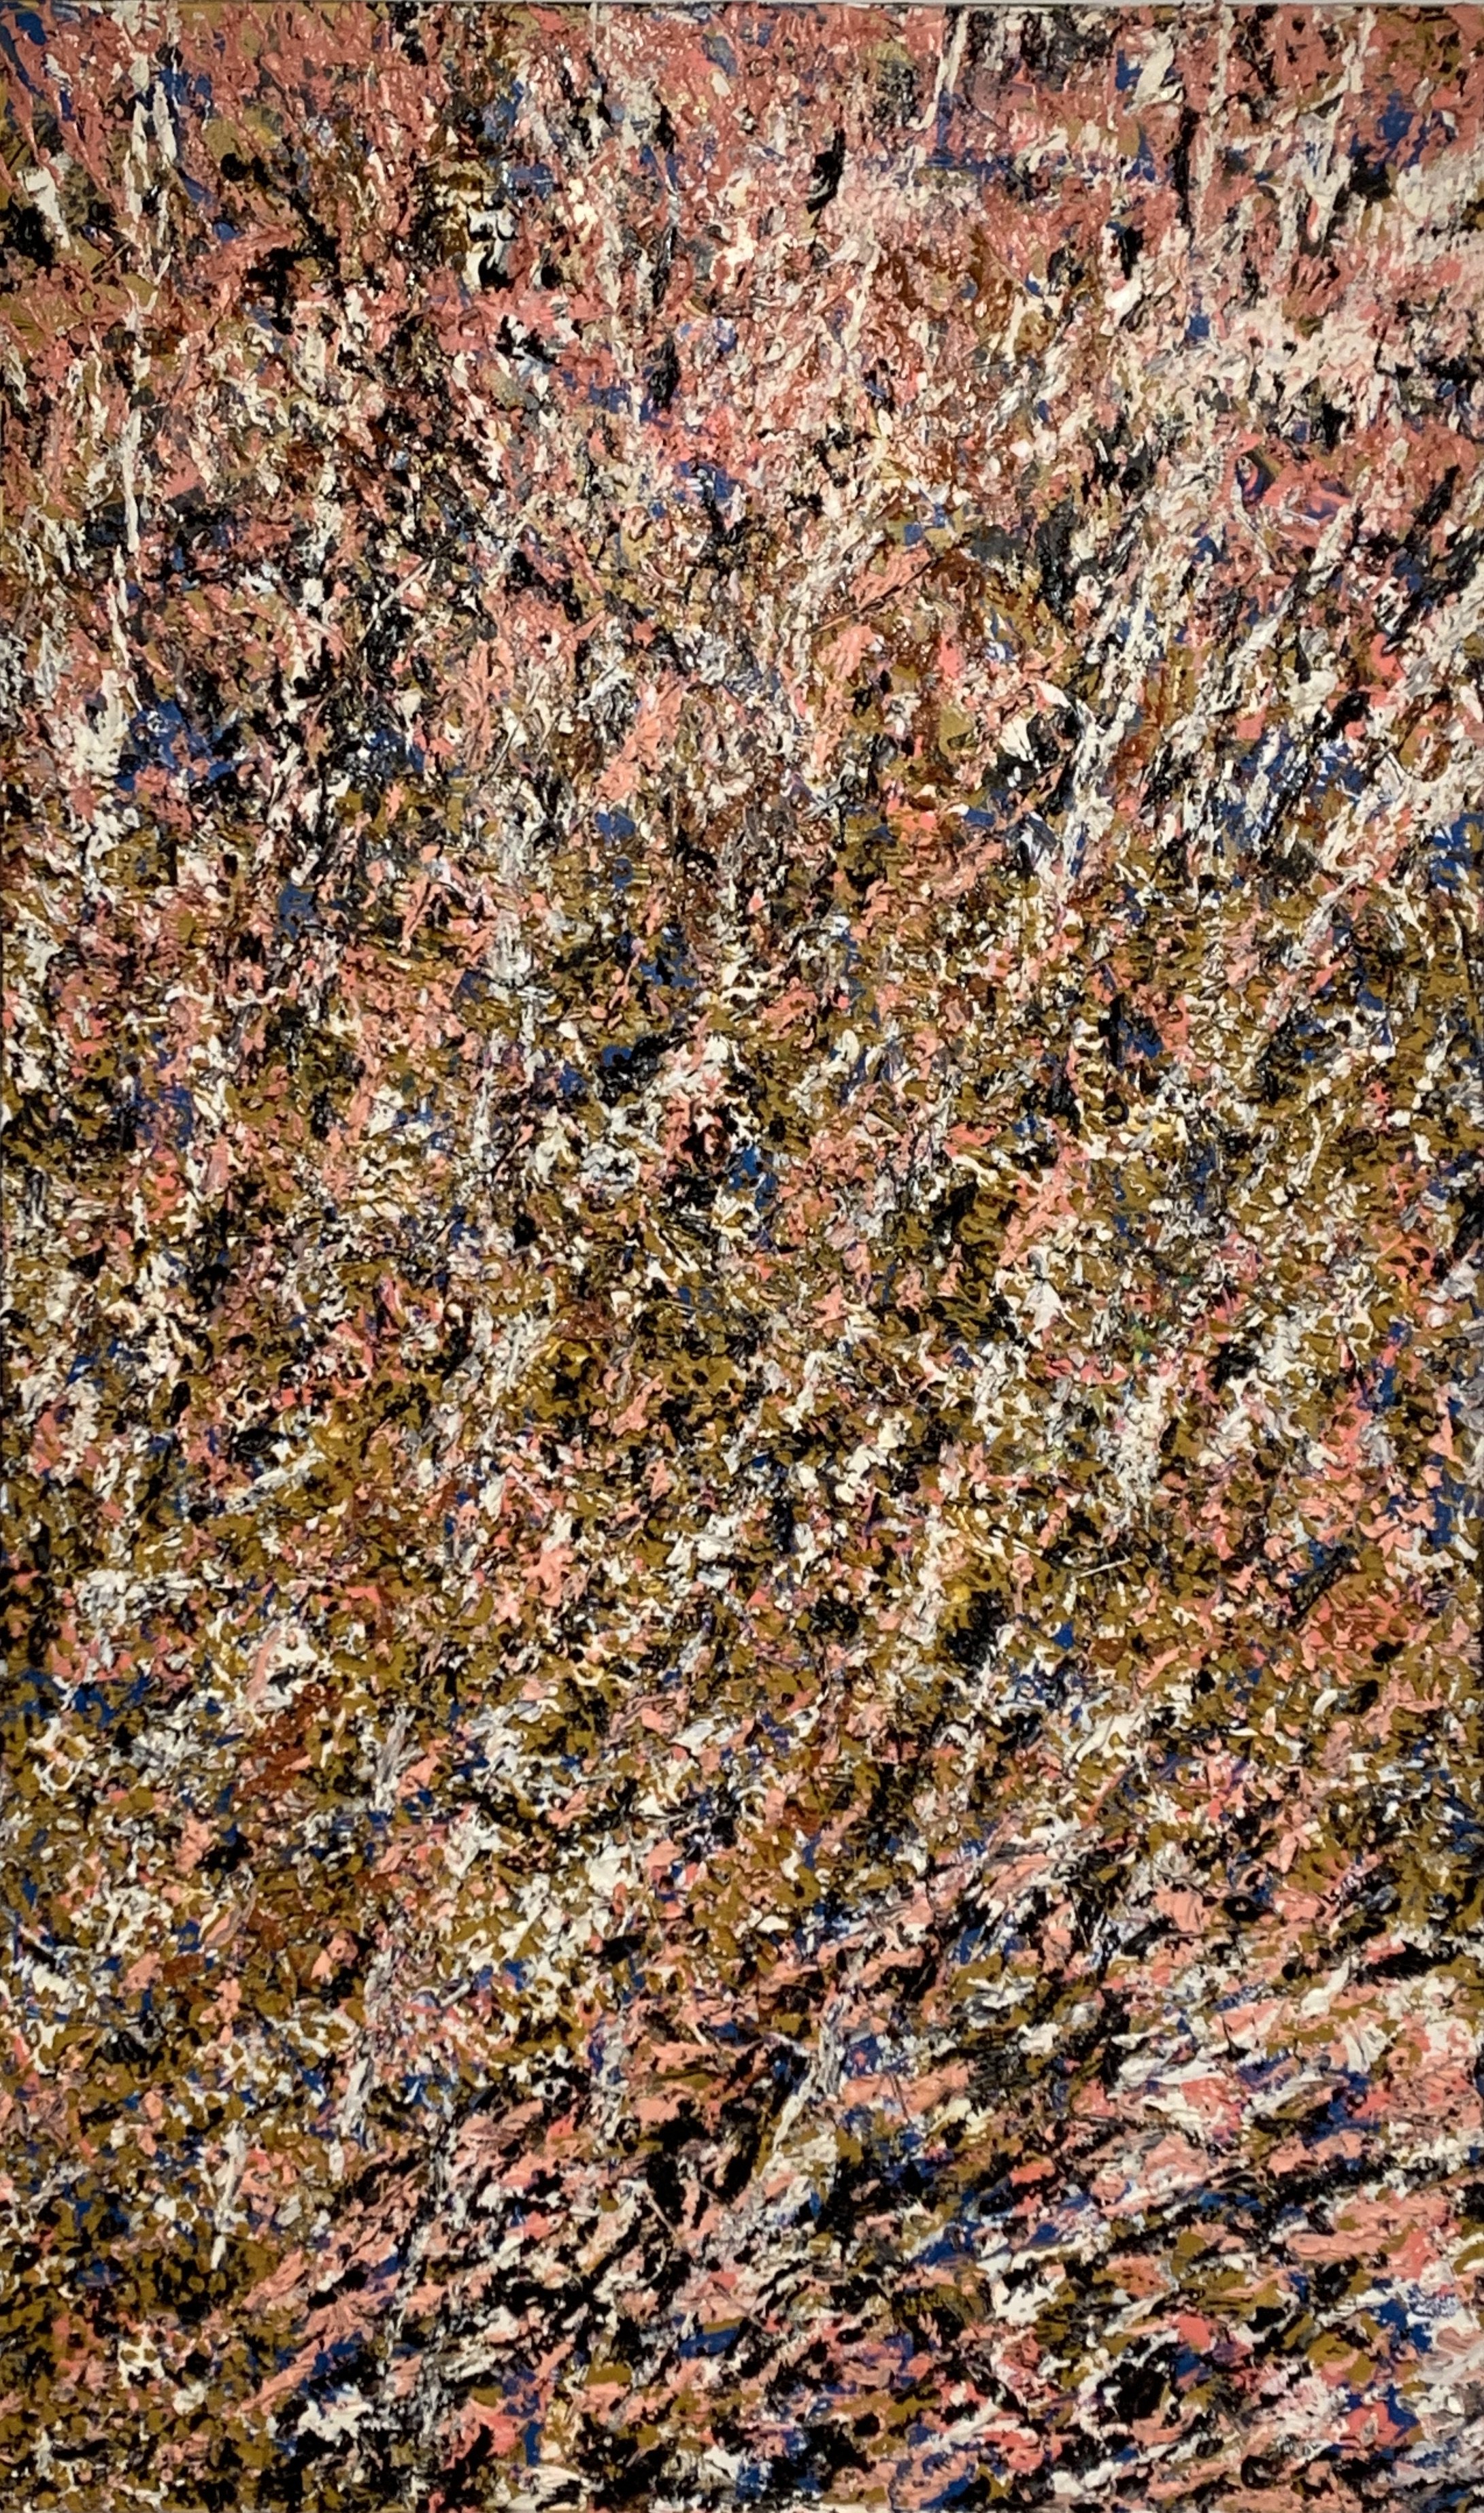 ARDOR, oil on canvas, 2023, 60" x 36"